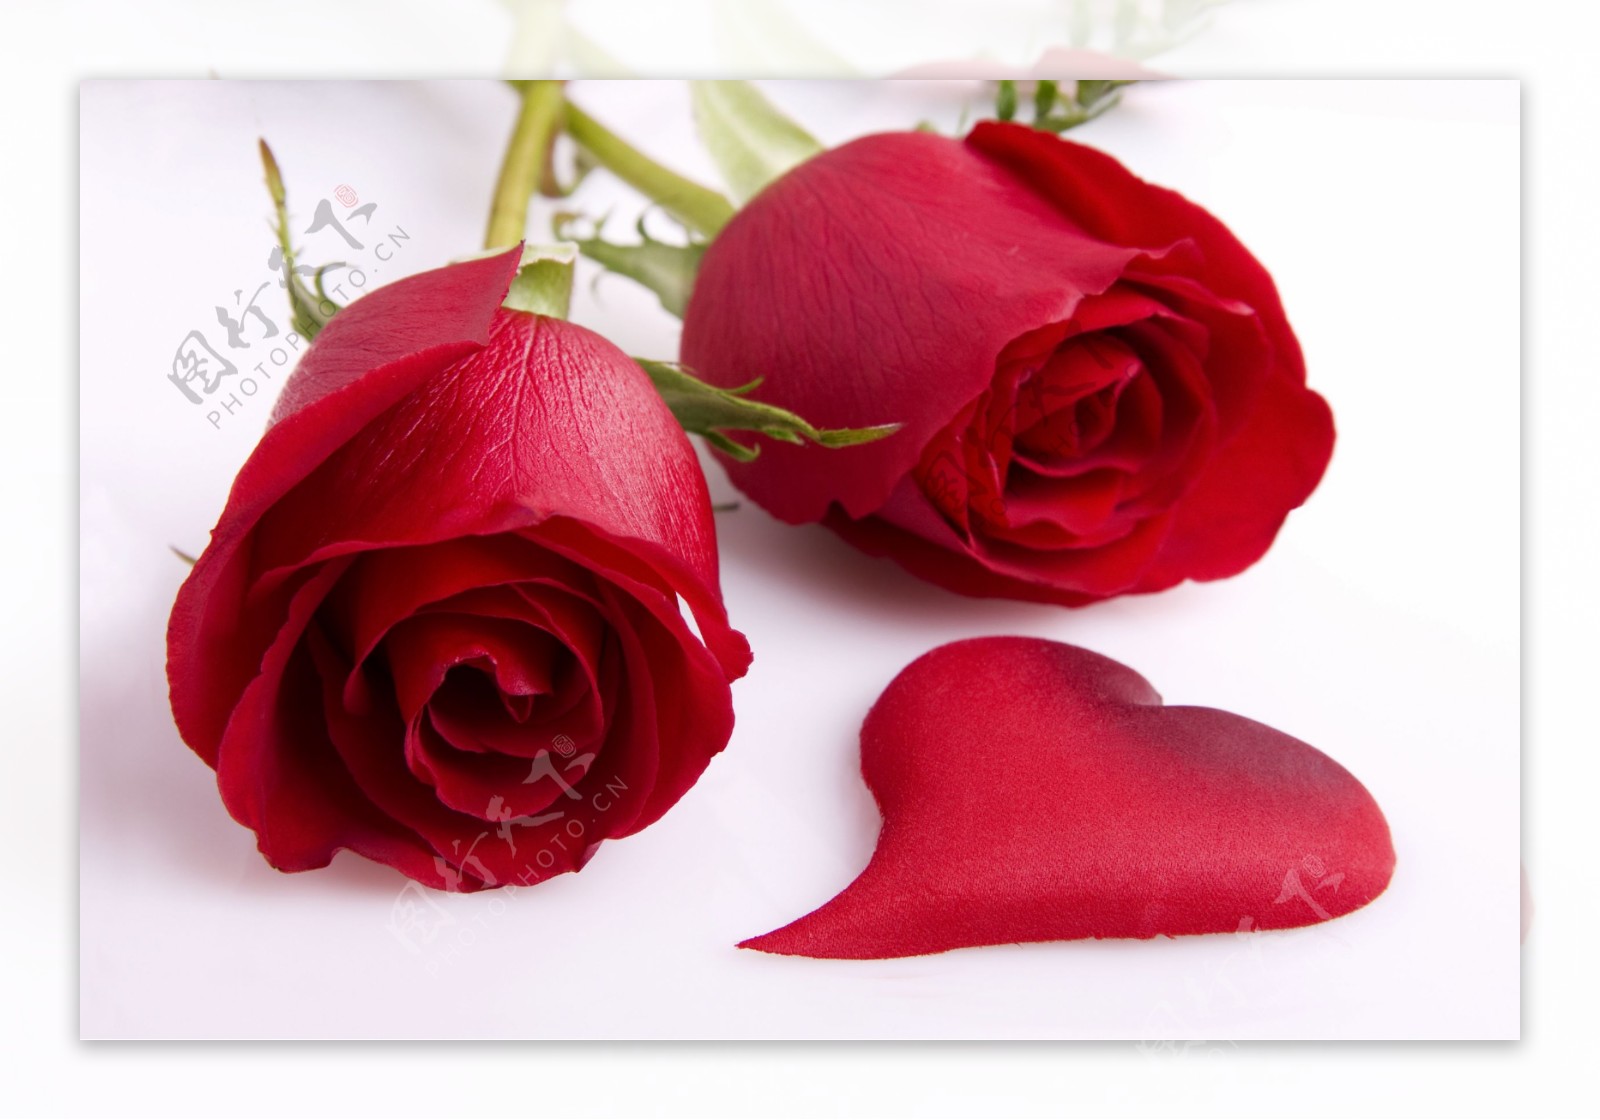 两朵玫瑰花与心形花瓣图片